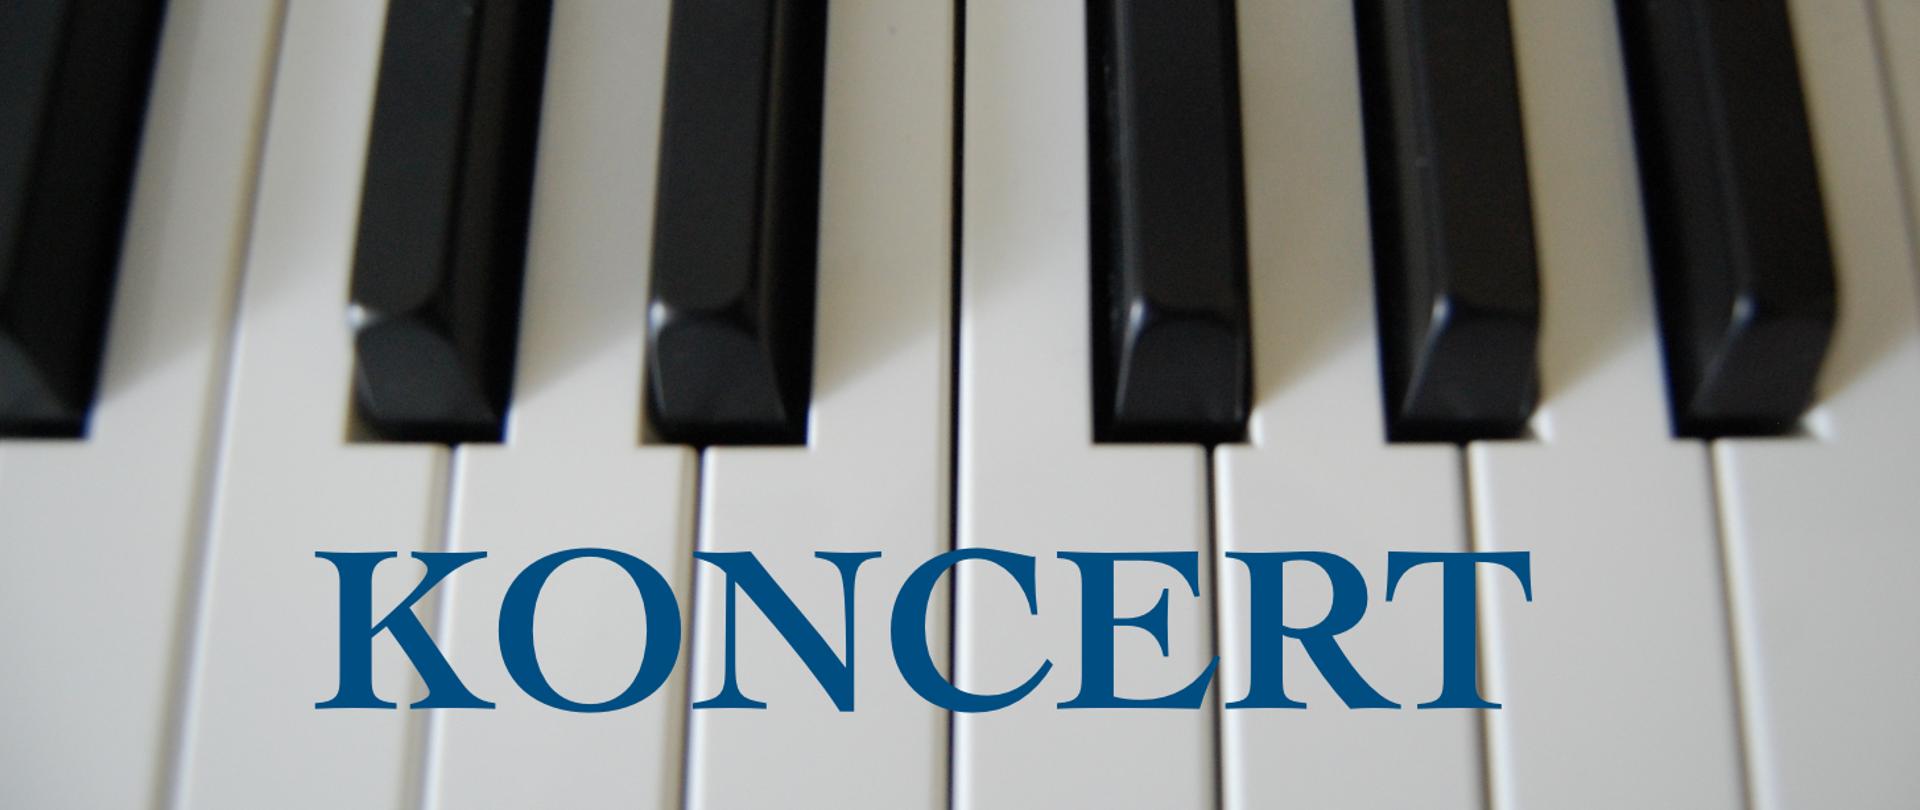 Grafika przedstawia fragment klawiatury fortepianowej, na tle białych klawiszy niebieski napis pod tytułem koncert.